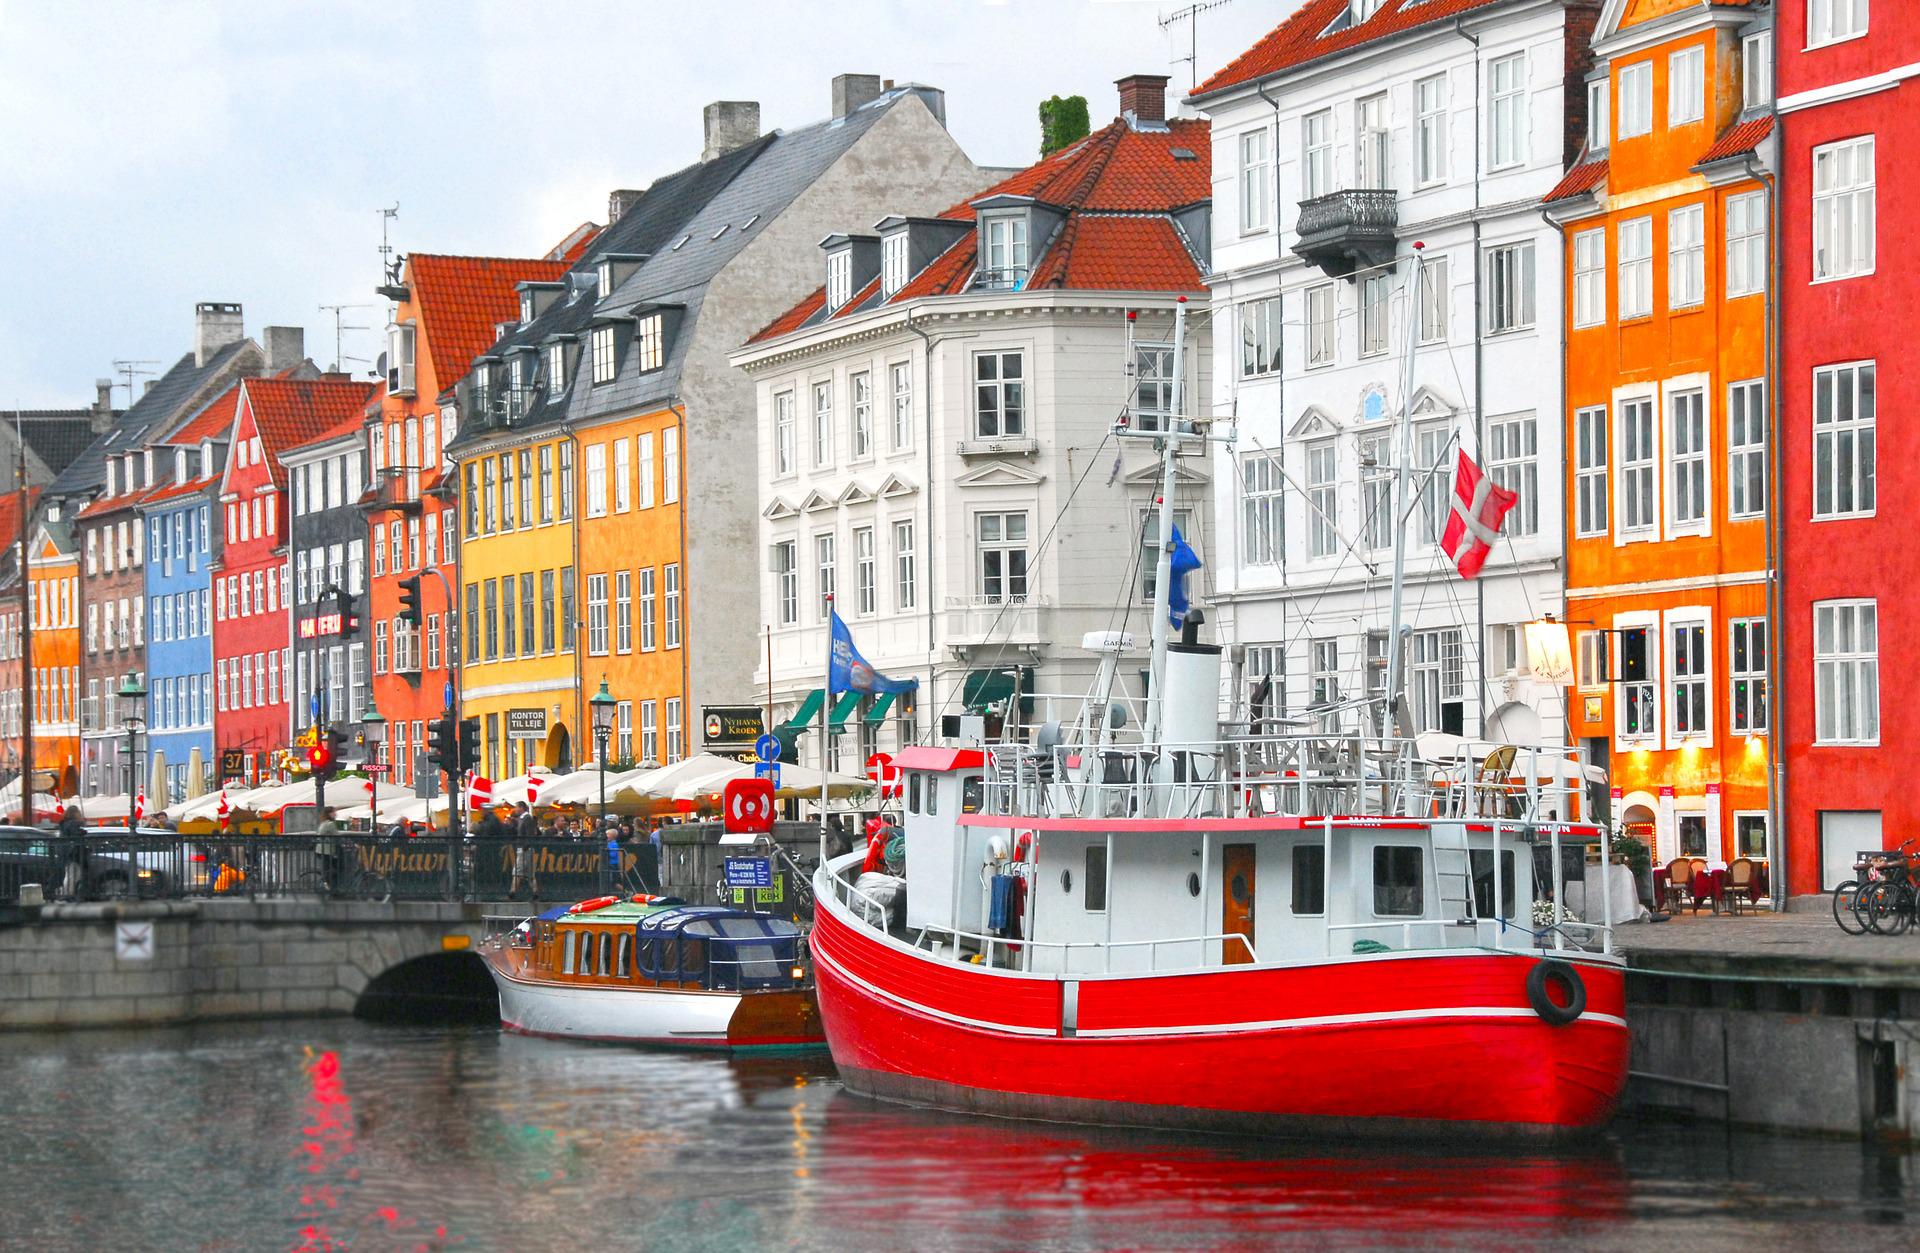 Edifici di Copenaghen si affacciano sul fiume Nyhavn